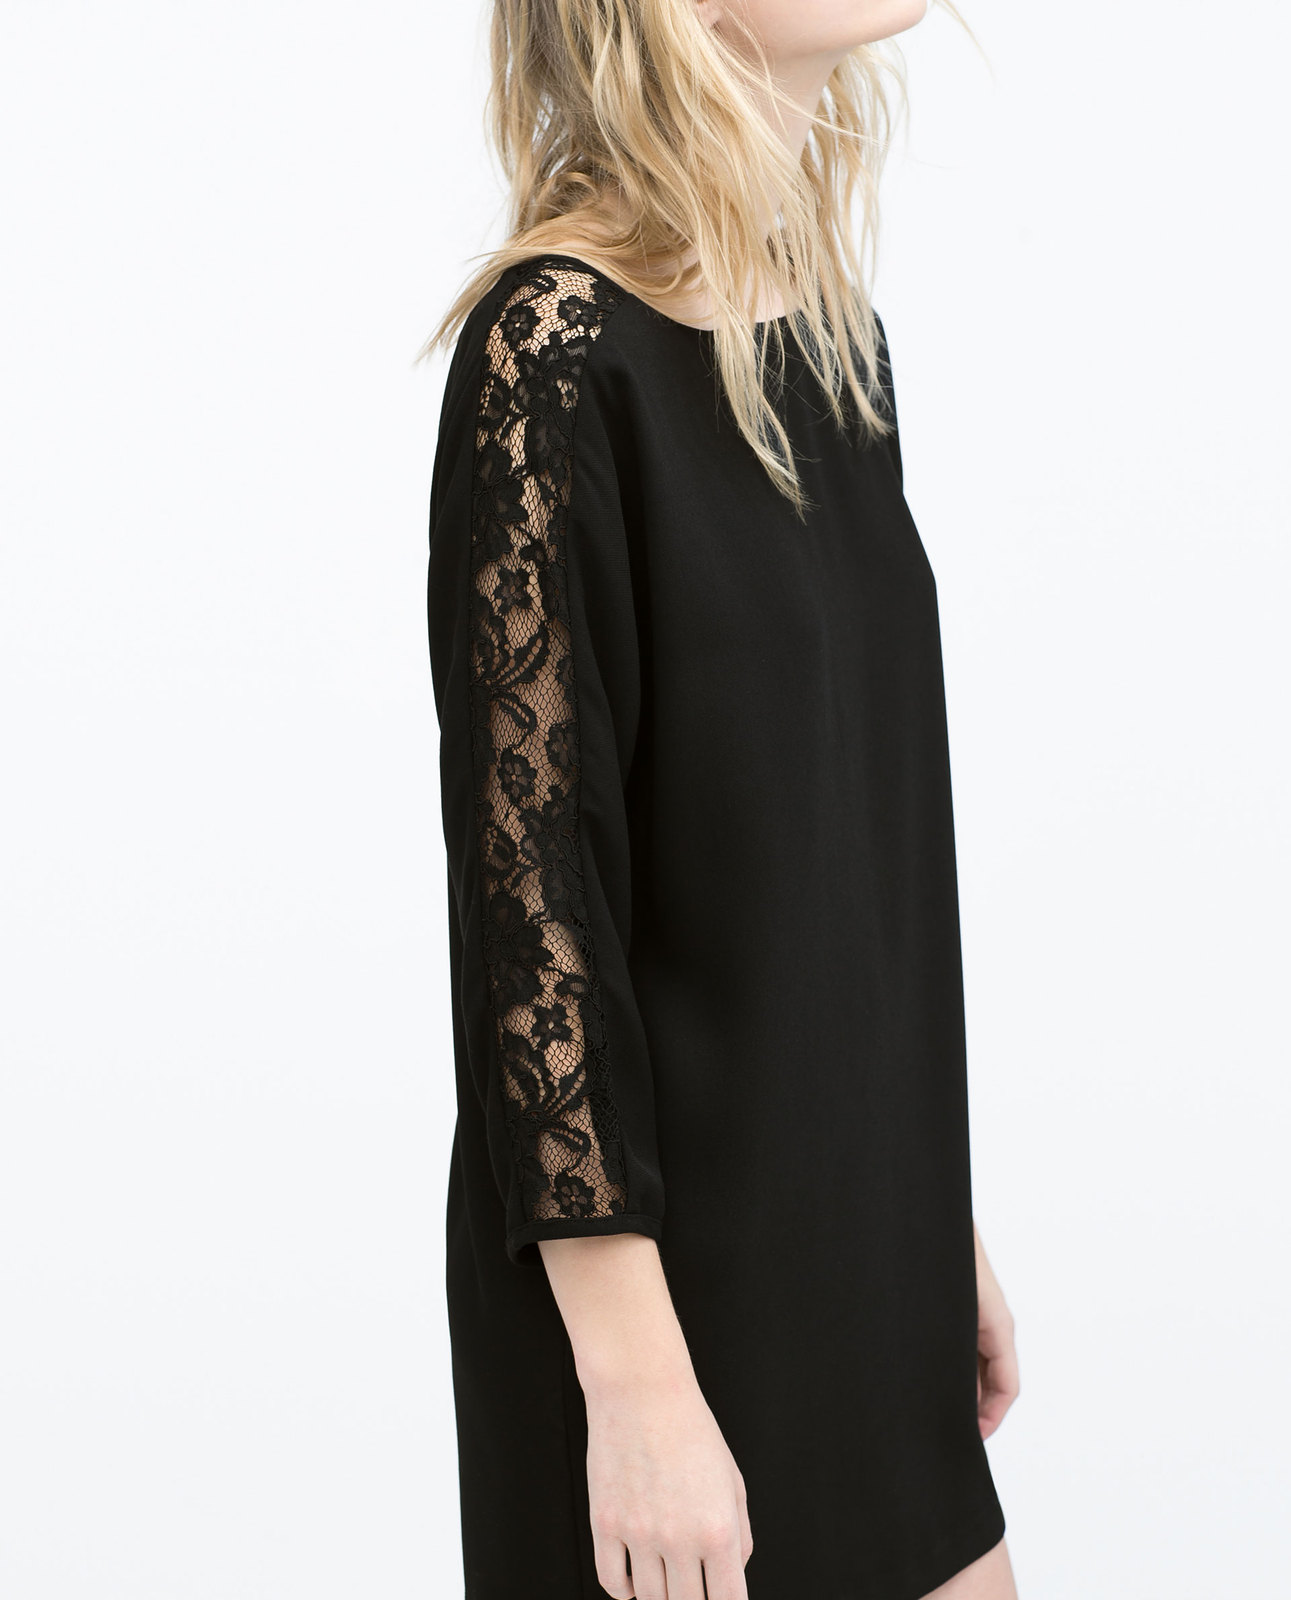 Zara fekete pulóver csipkebetétes ujjal 2015.02.23 fotója